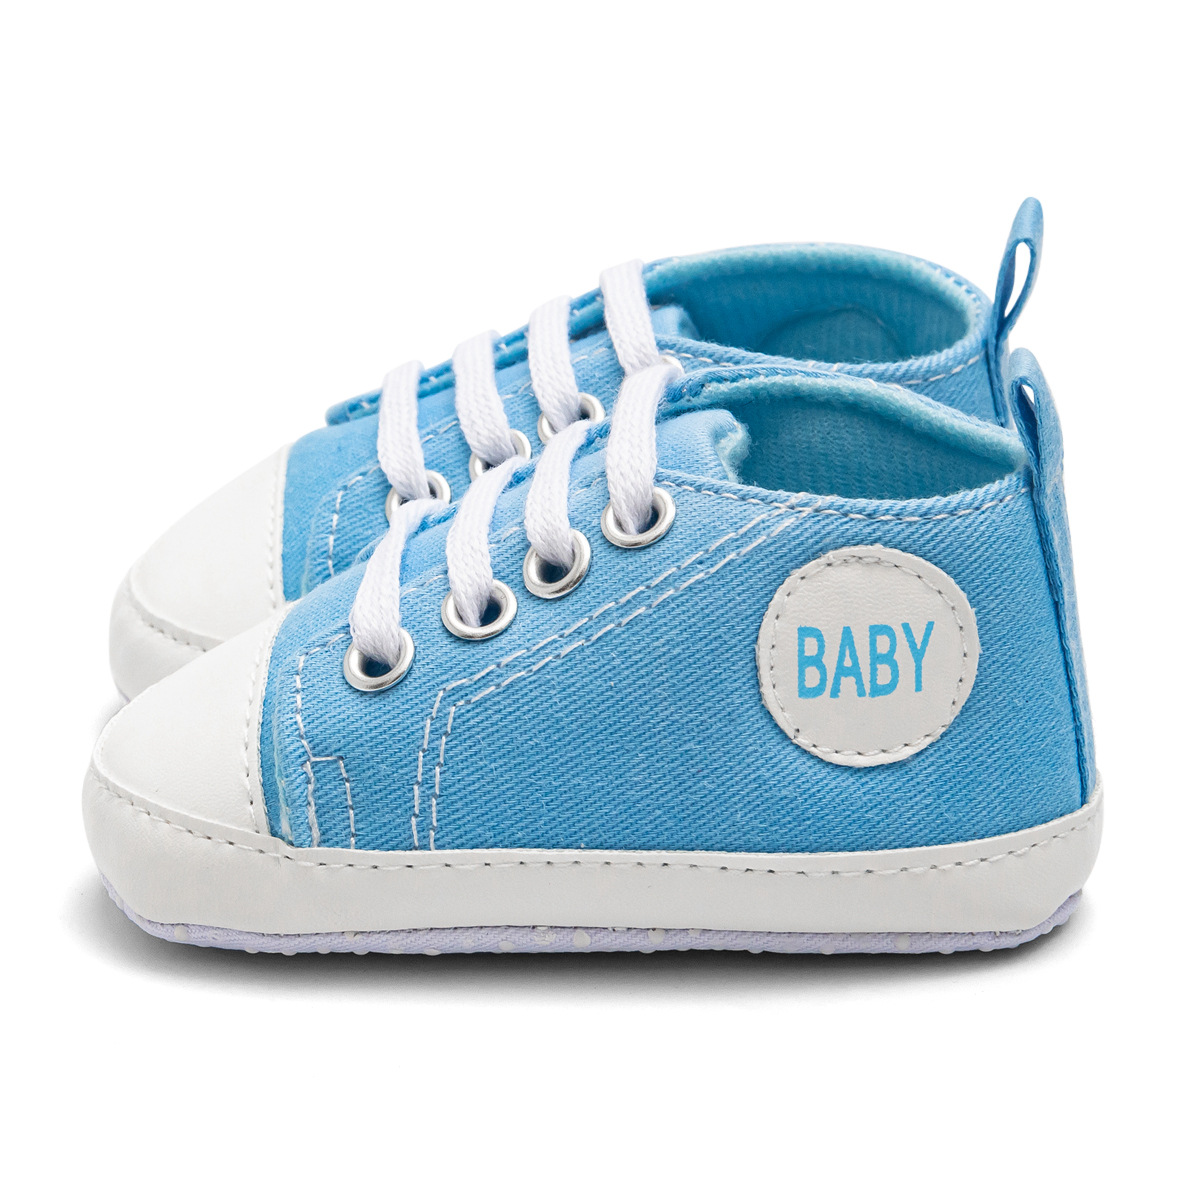 Chaussures bébé en Toile - Ref 3436676 Image 60